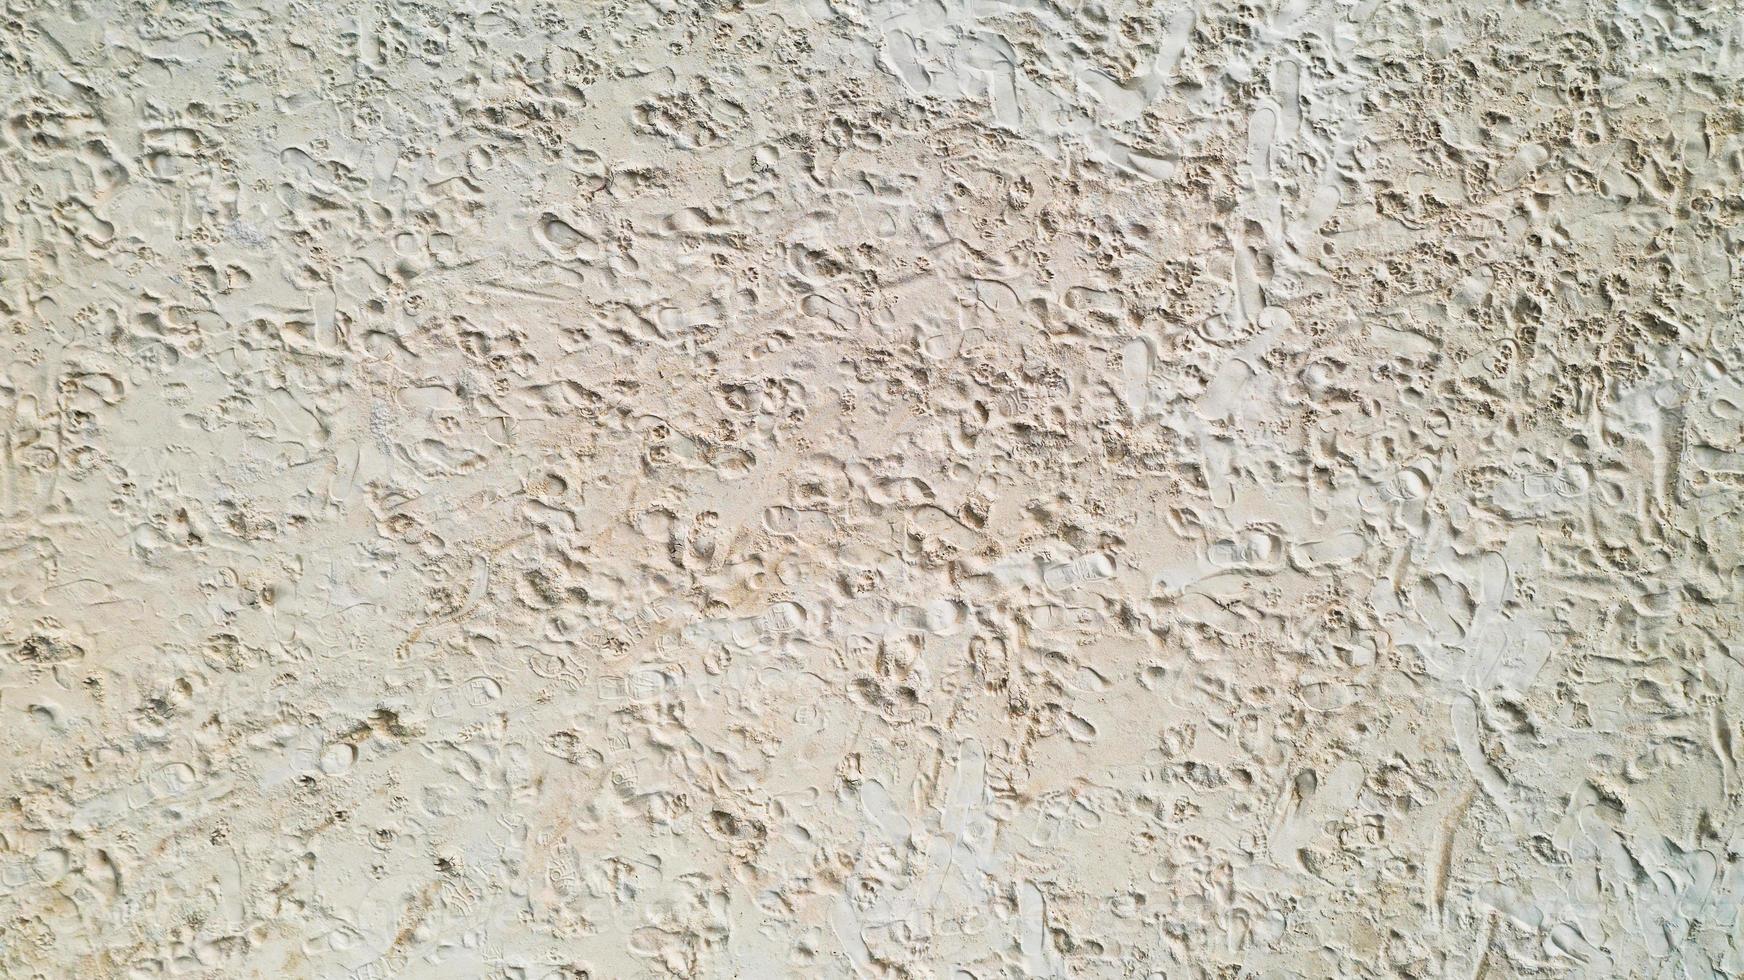 ytan på sandstrandbakgrunden foto